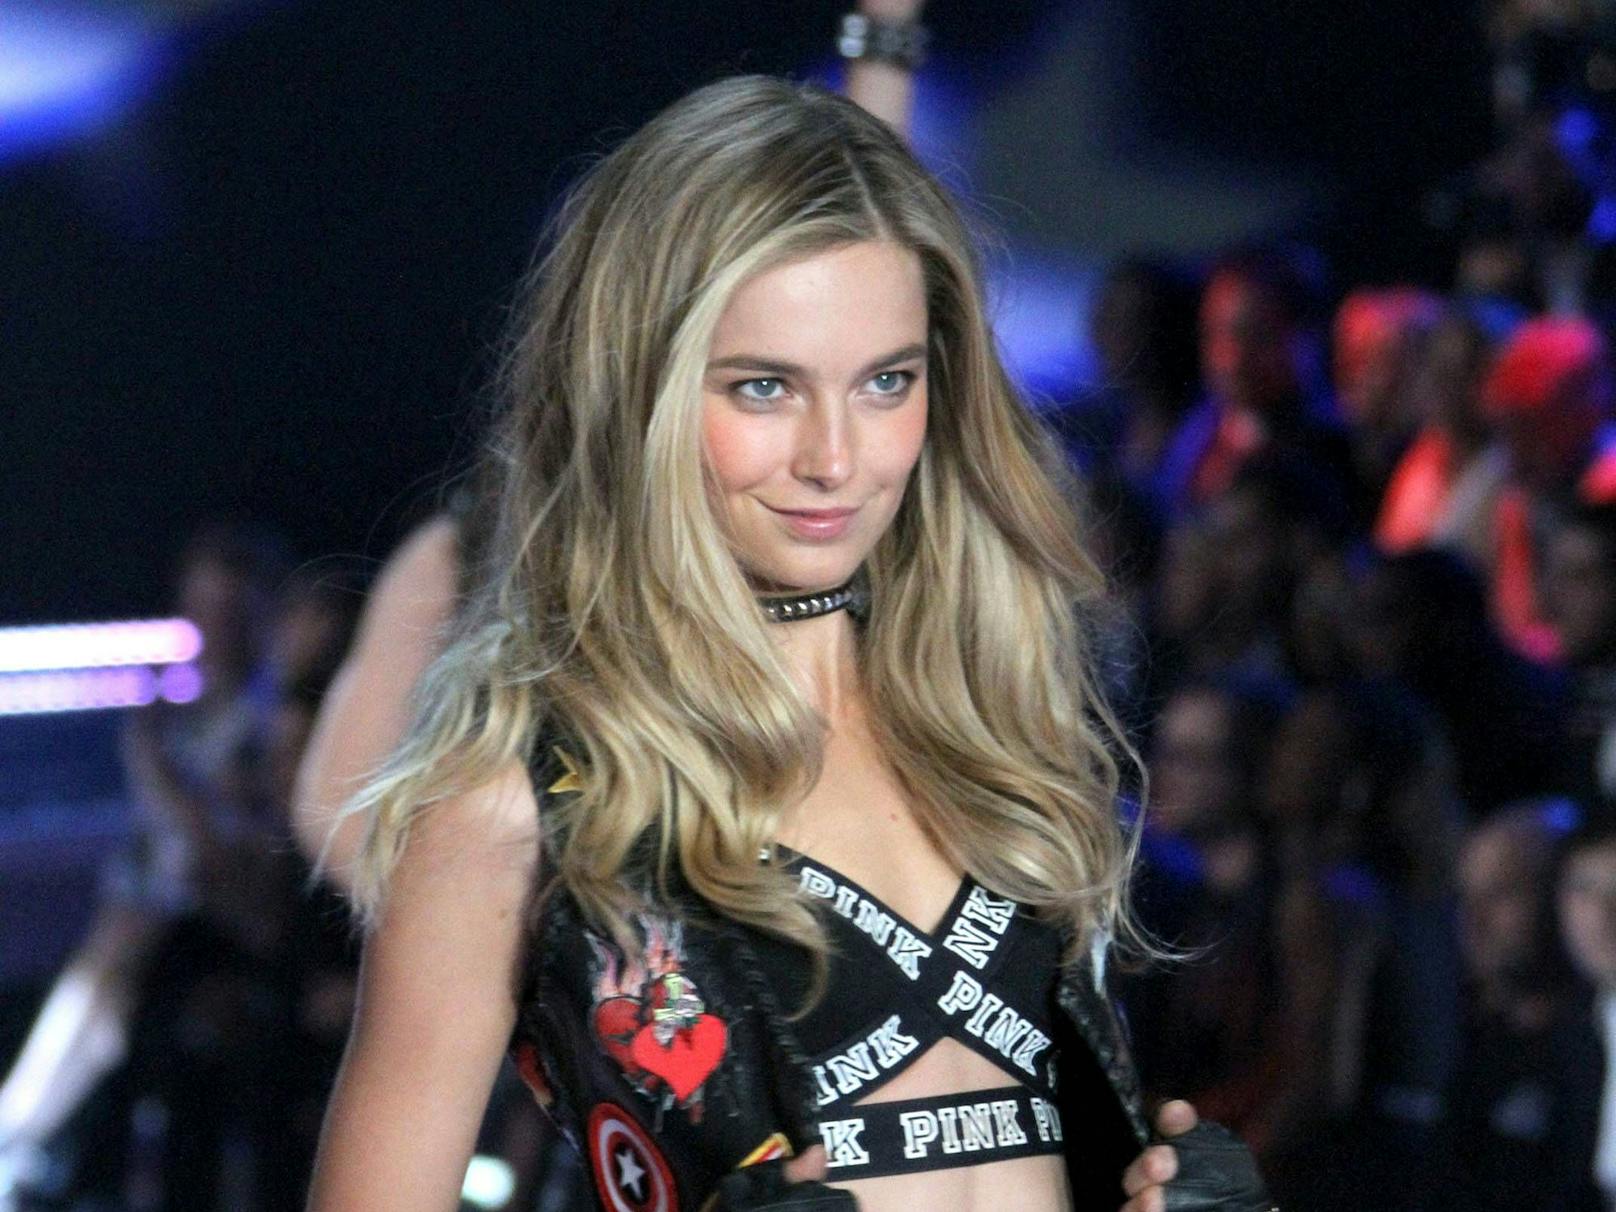 "Ich war innerlich eigentlich tot", erzählt Supermodel Bridget Malcolm. Sie erhebt schwere Vorwürfe gegen den Lingerie-Konzern Victoria's Secret